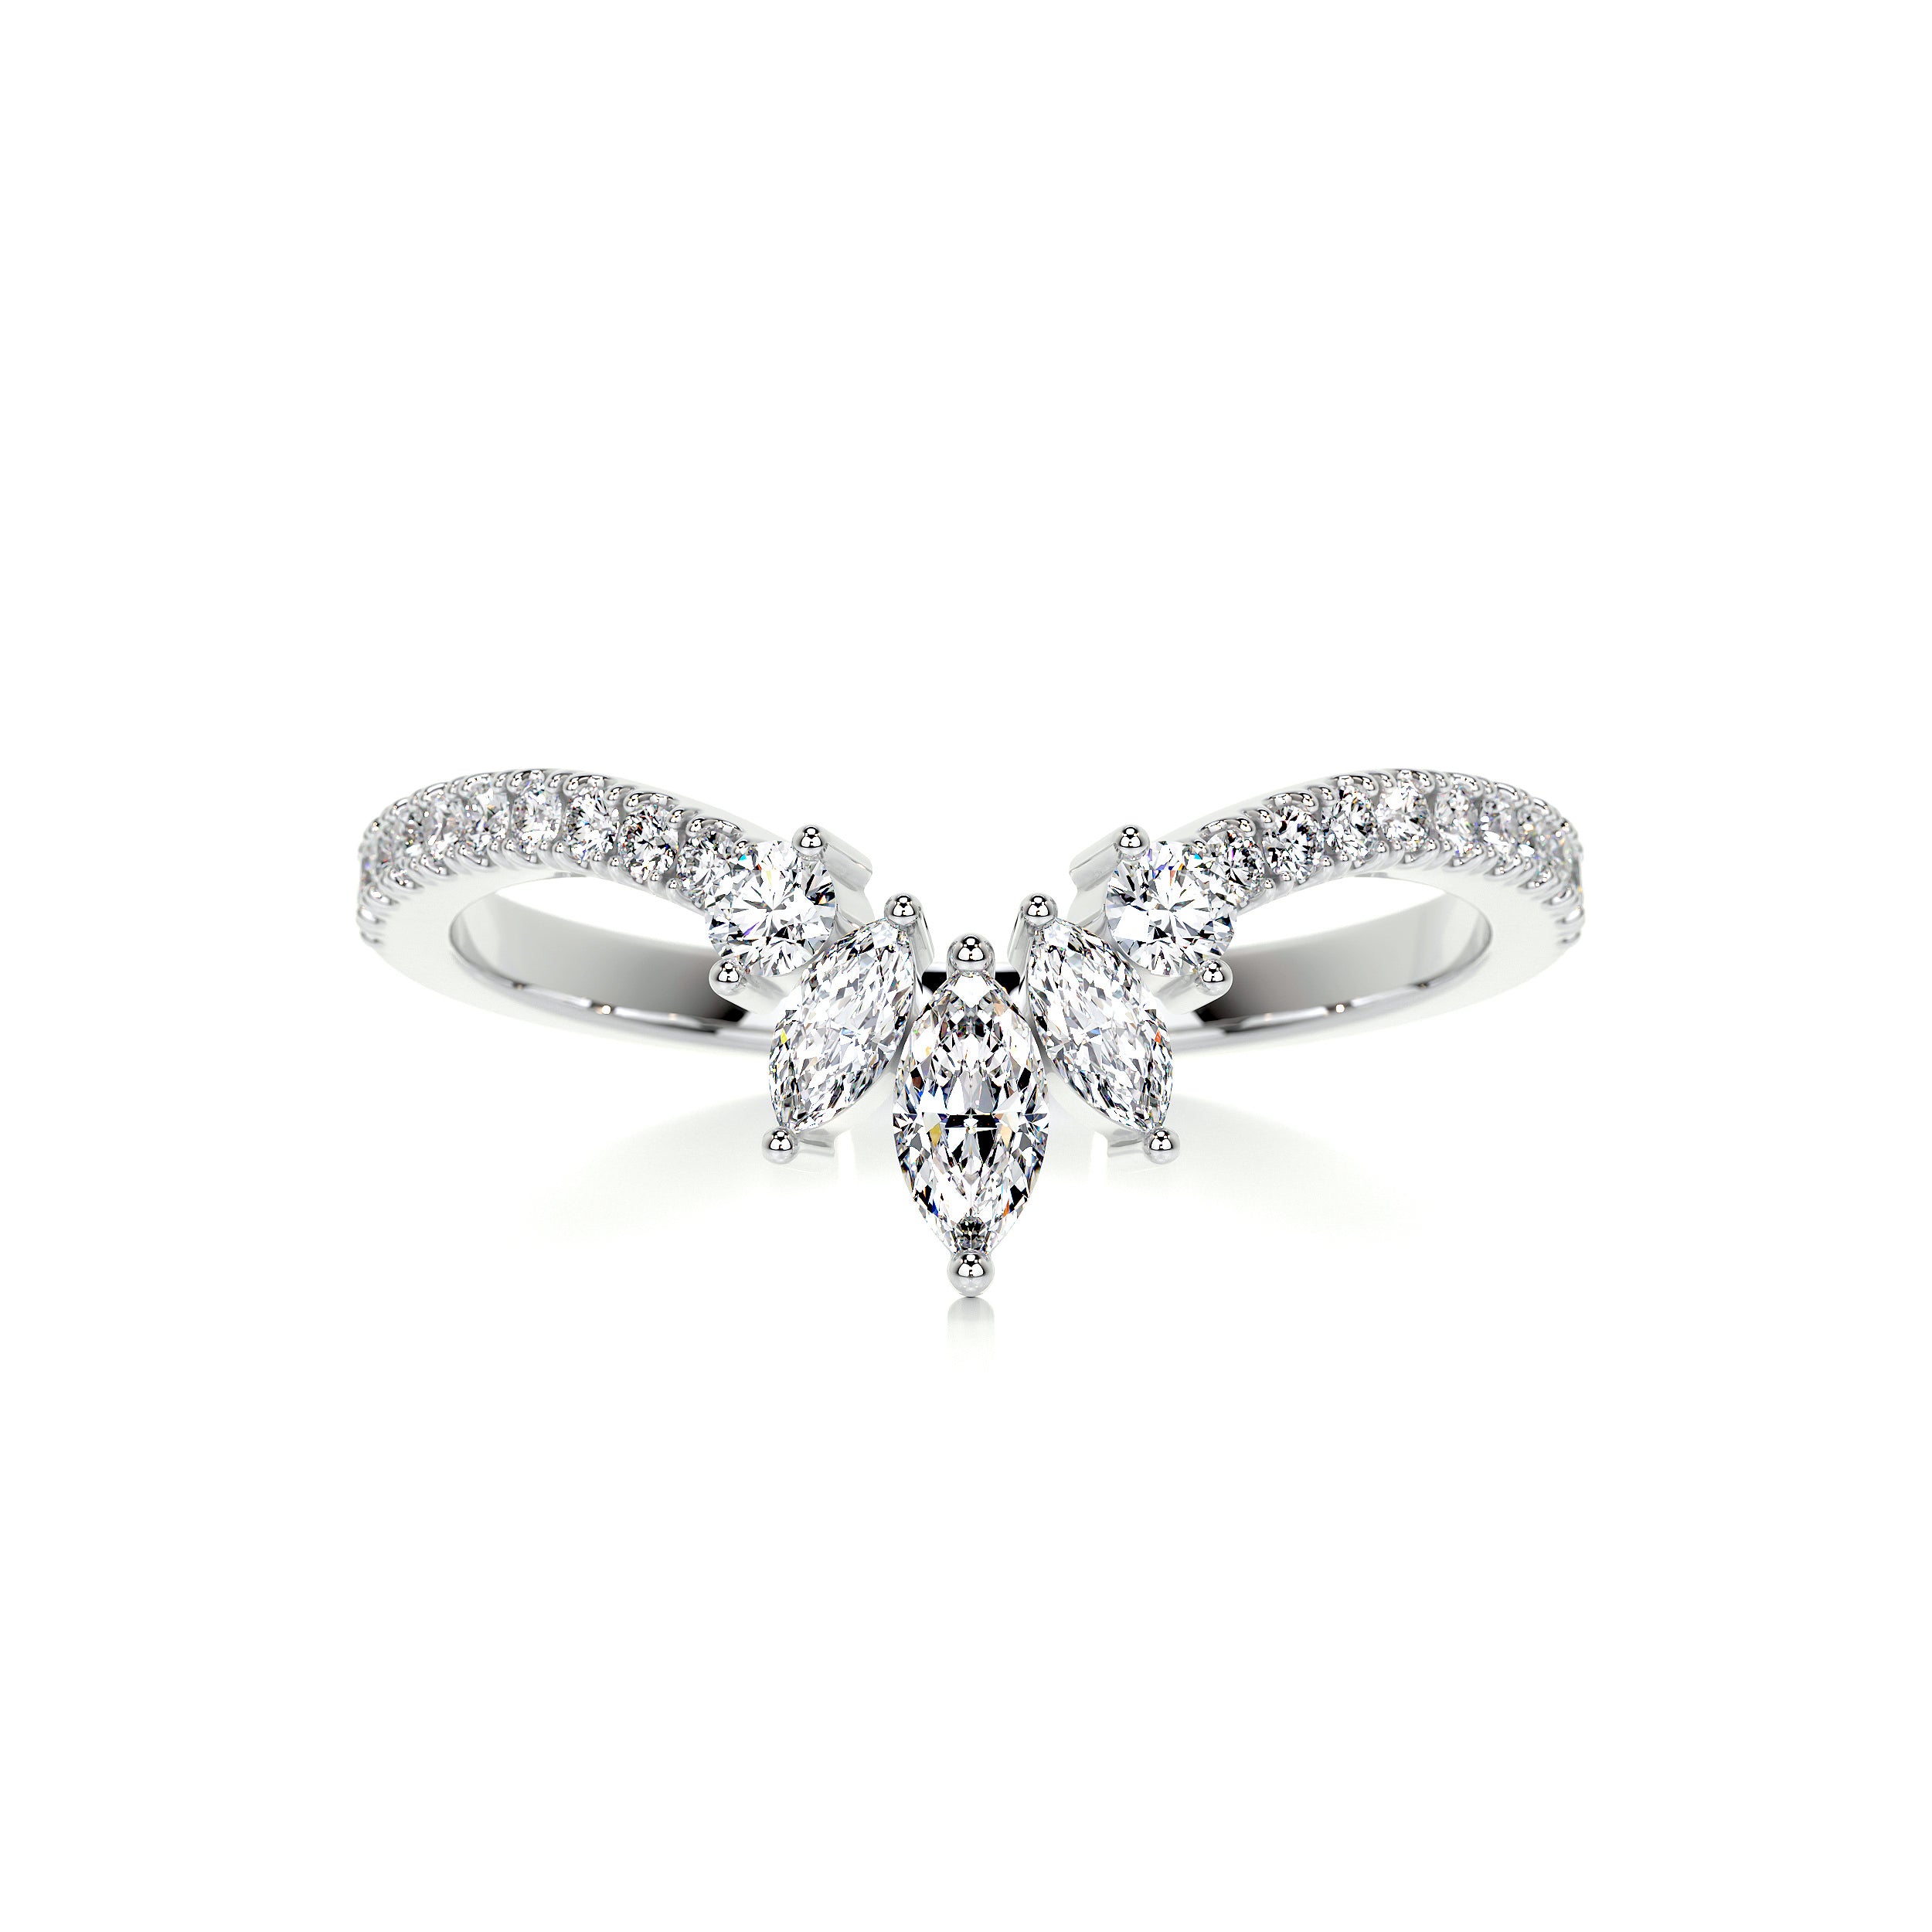 Lauren Diamond Wedding Ring   (0.30 Carat) -Platinum